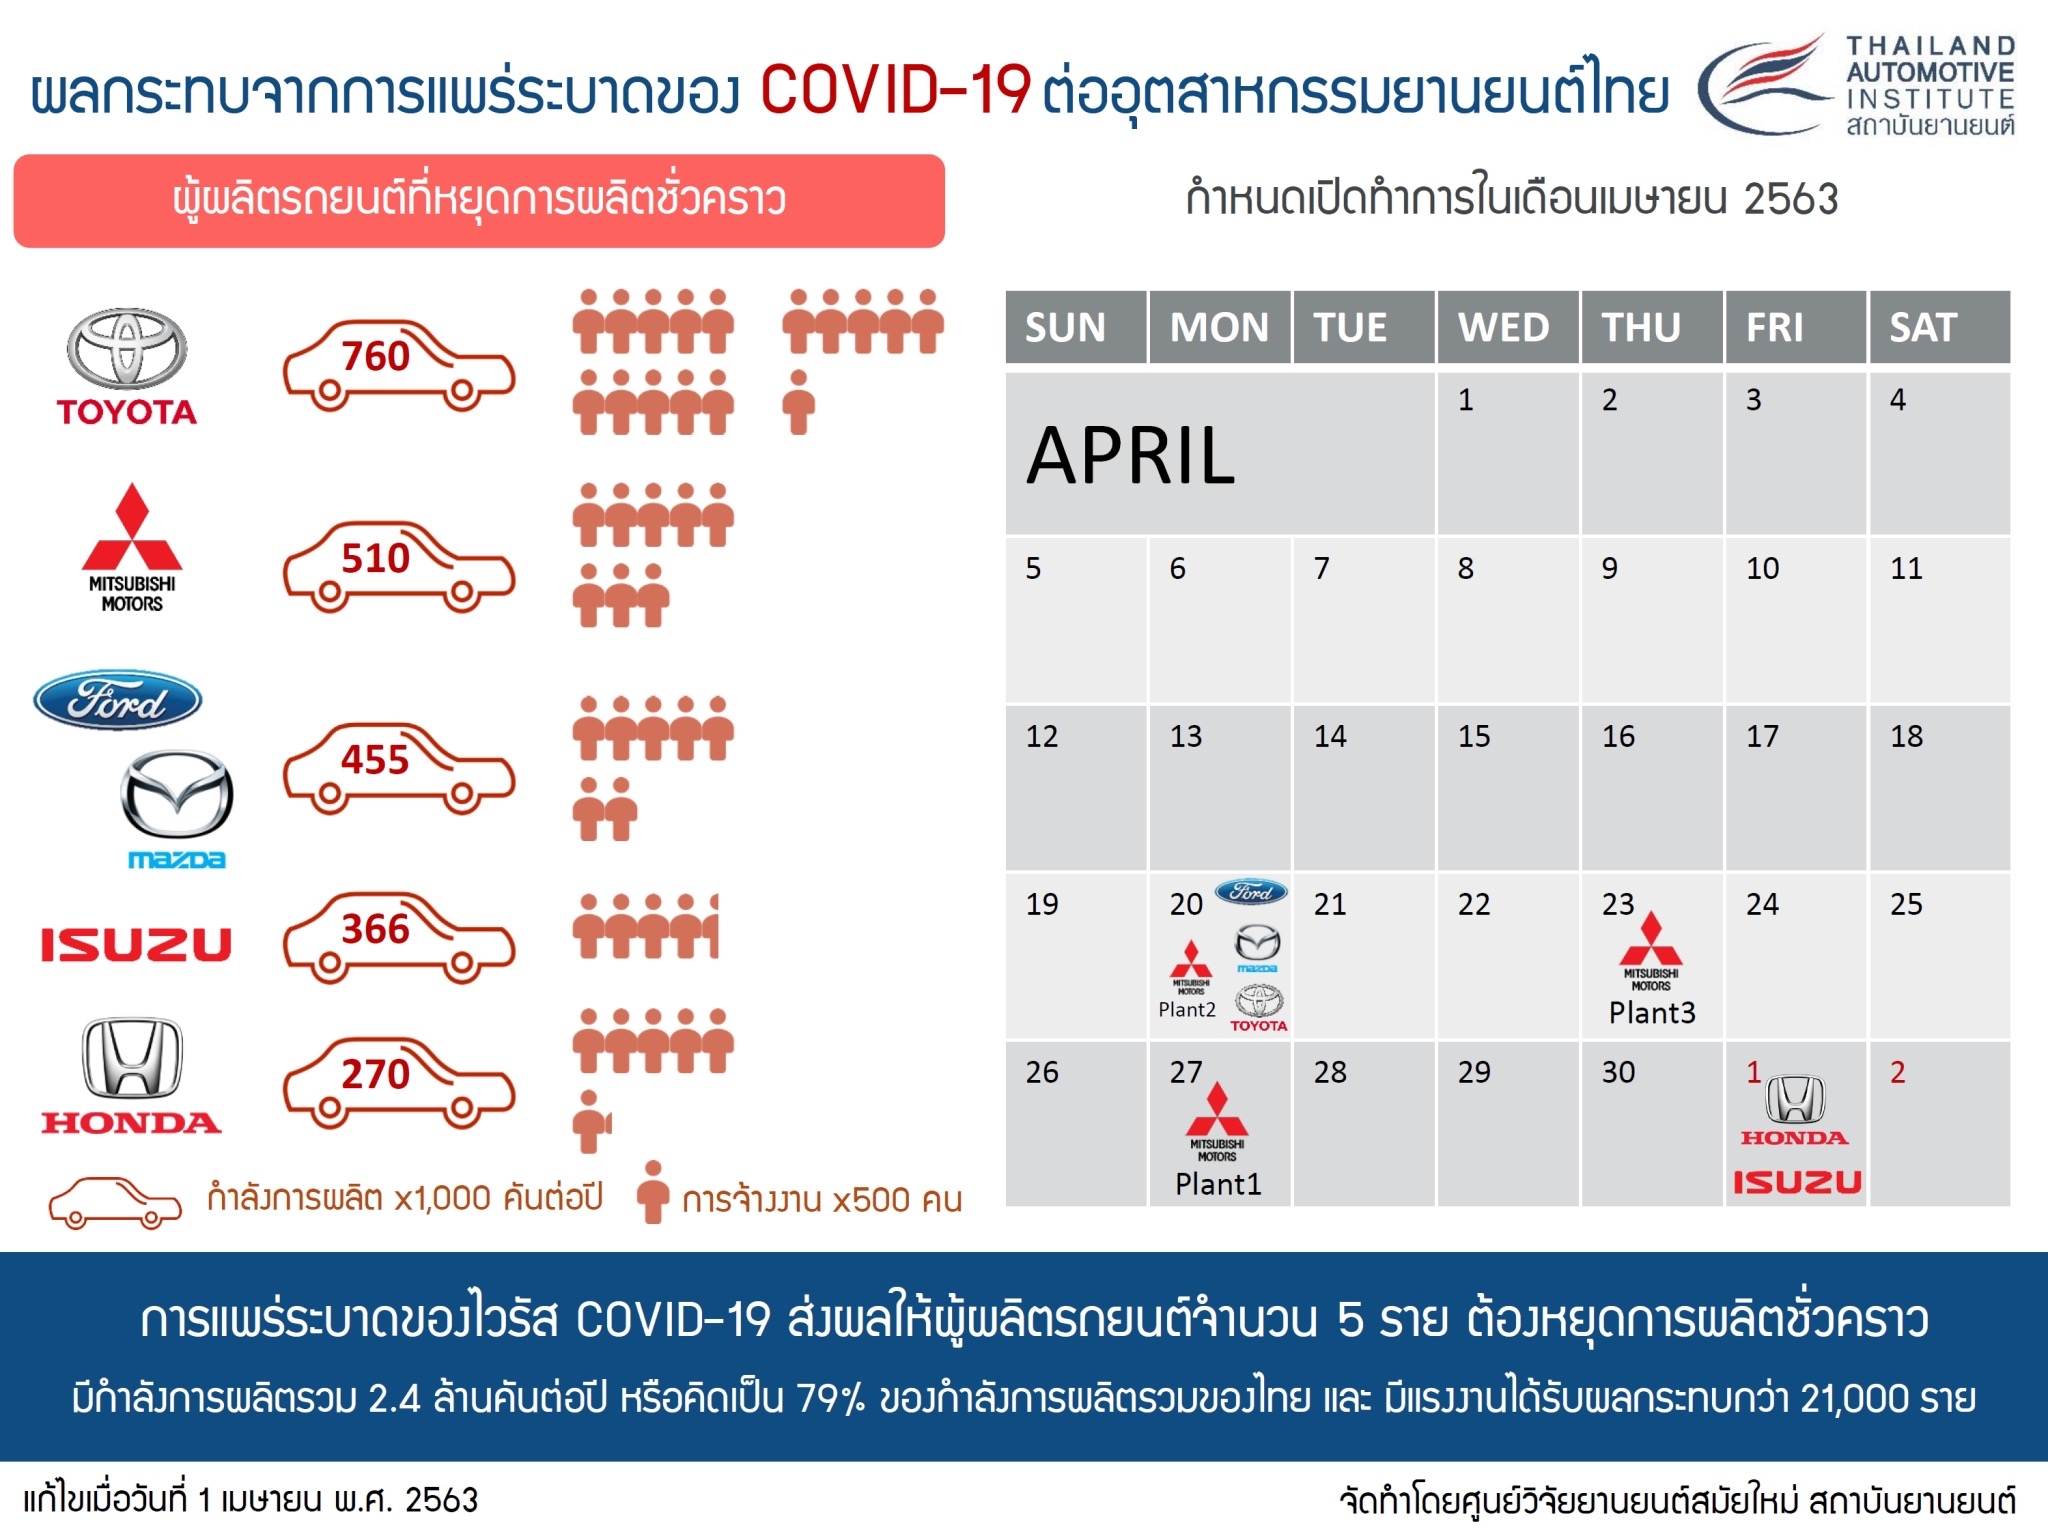 ผลกระทบจาการแพร่ระบาดของ COVID-19 ต่ออุตสาหกรรมยานยนต์ไทย